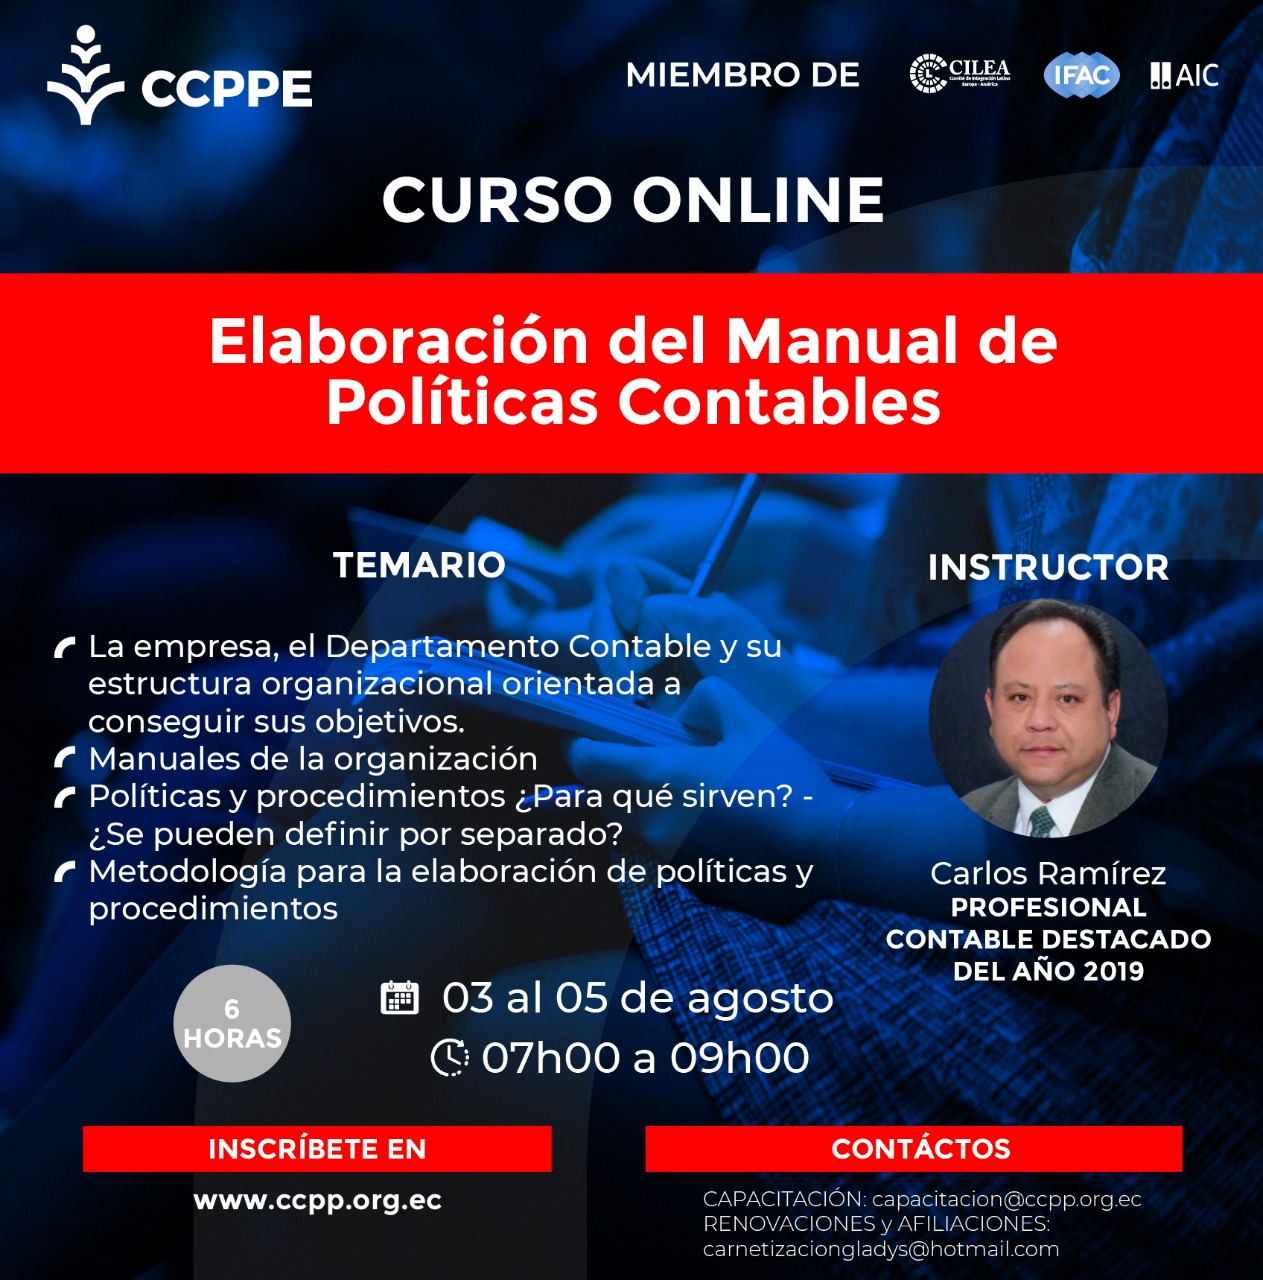 ELABORACIÓN MANUAL POLITICAS CONTABLES - 03 AL 05 AGOSTO 2020